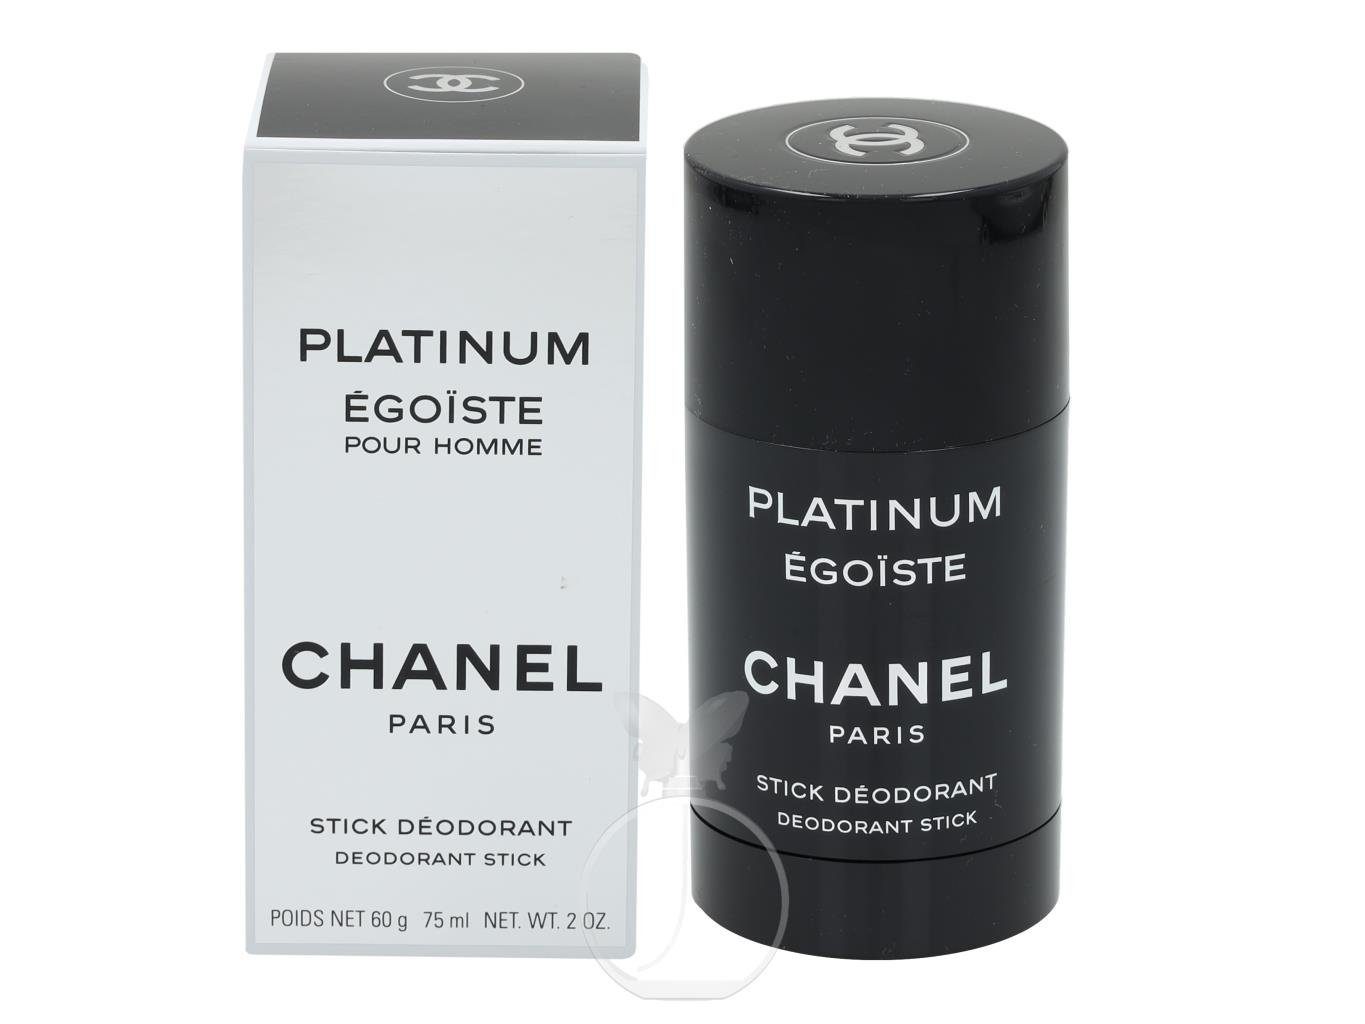 CHANEL Körperpflegeduft Egoiste Platinum Chanel ml 75 Deostick